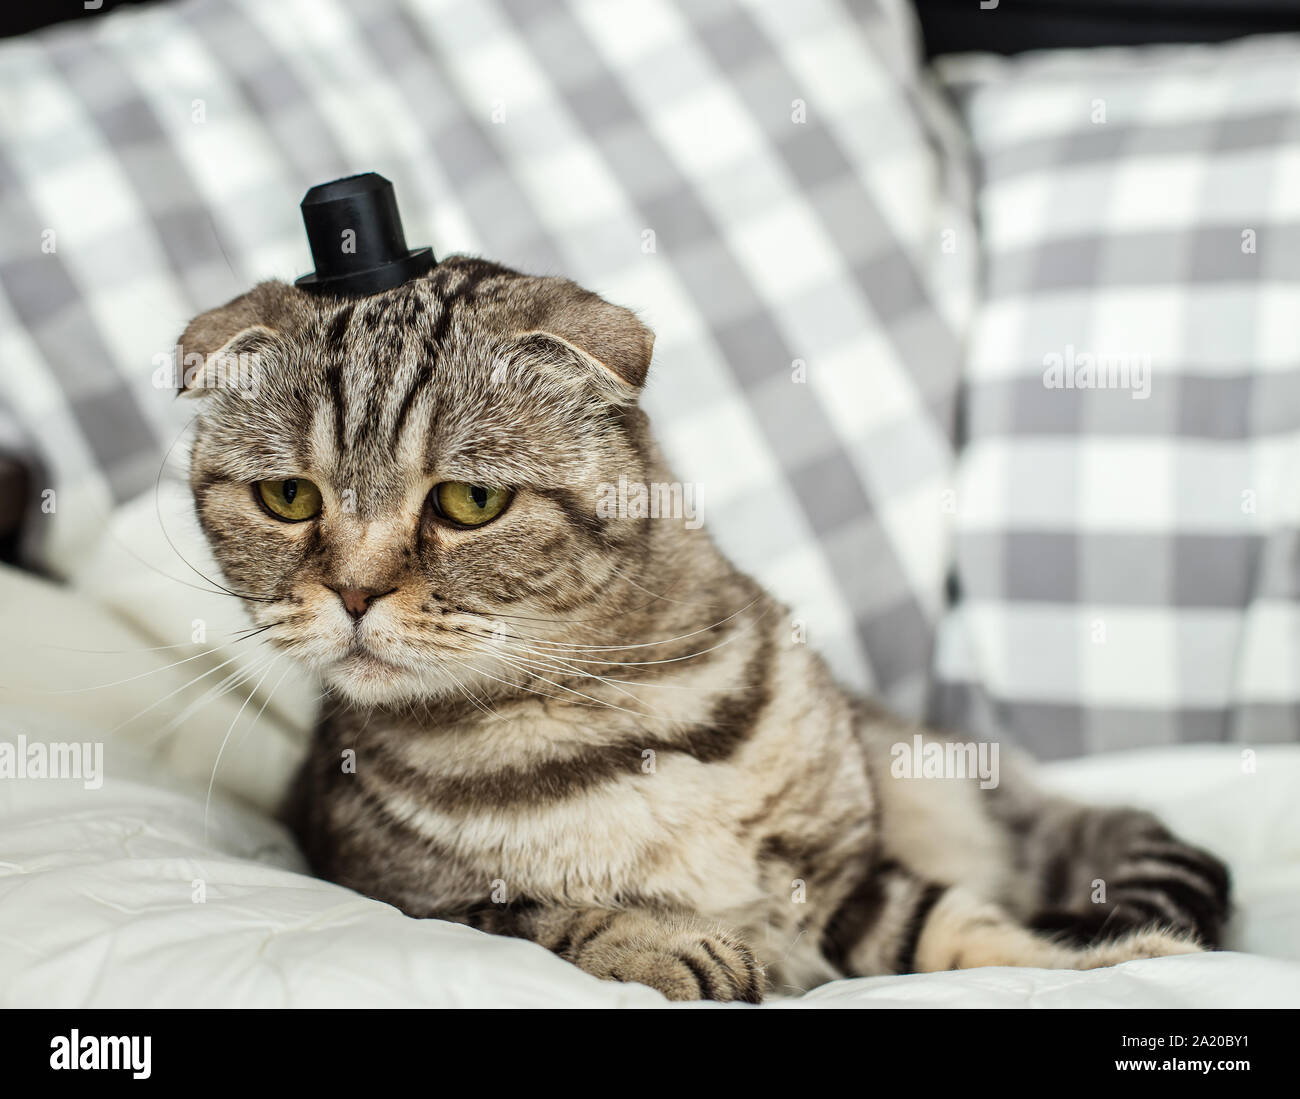 Surpris et très drôle Scottish Fold chat avec un chapeau sur la tête couché  sur couverture blanche Photo Stock - Alamy